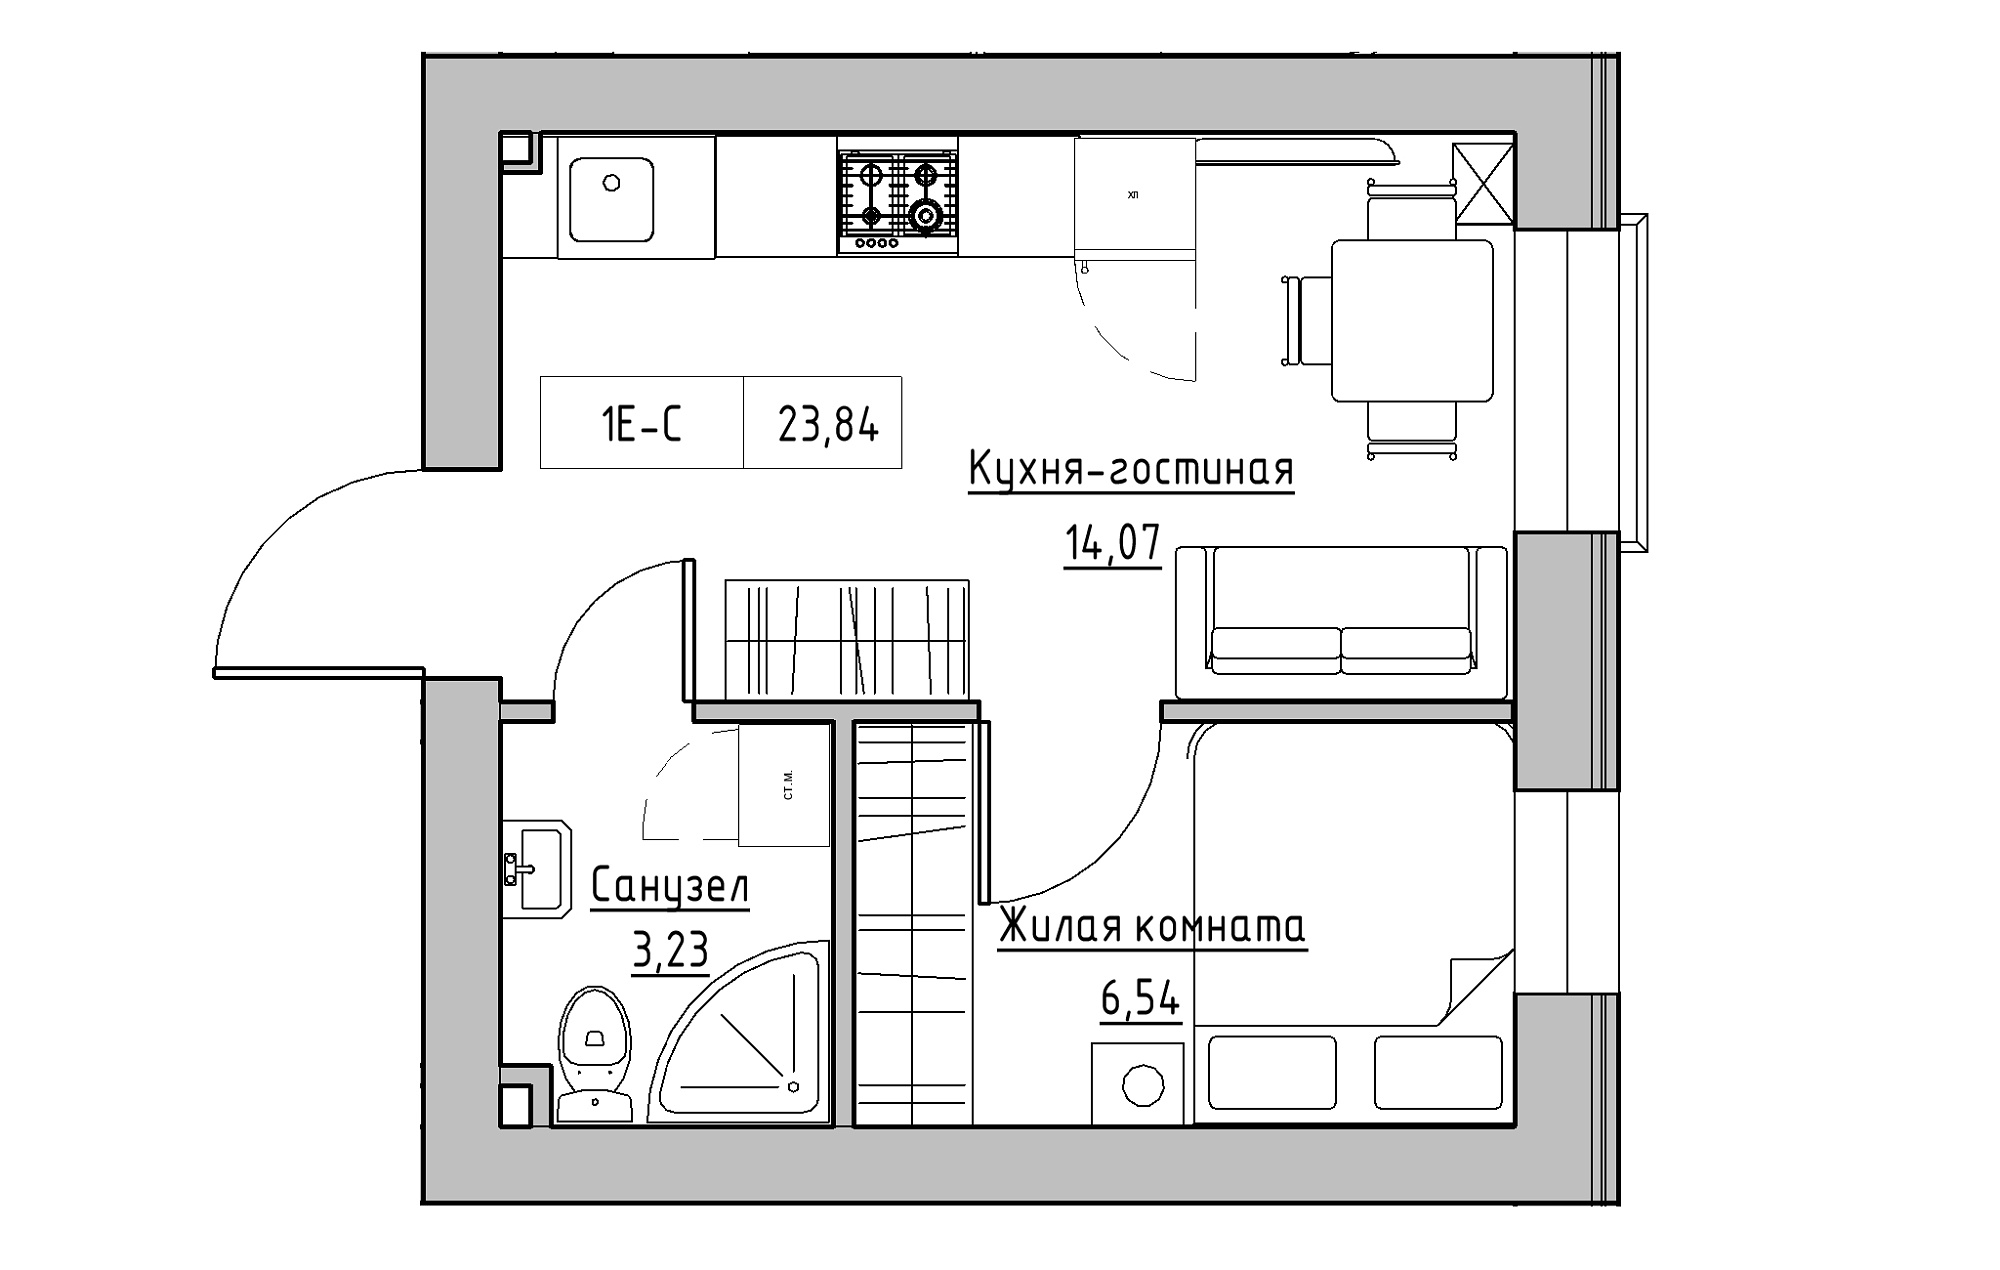 Планировка 1-к квартира площей 23.84м2, KS-018-02/0011.